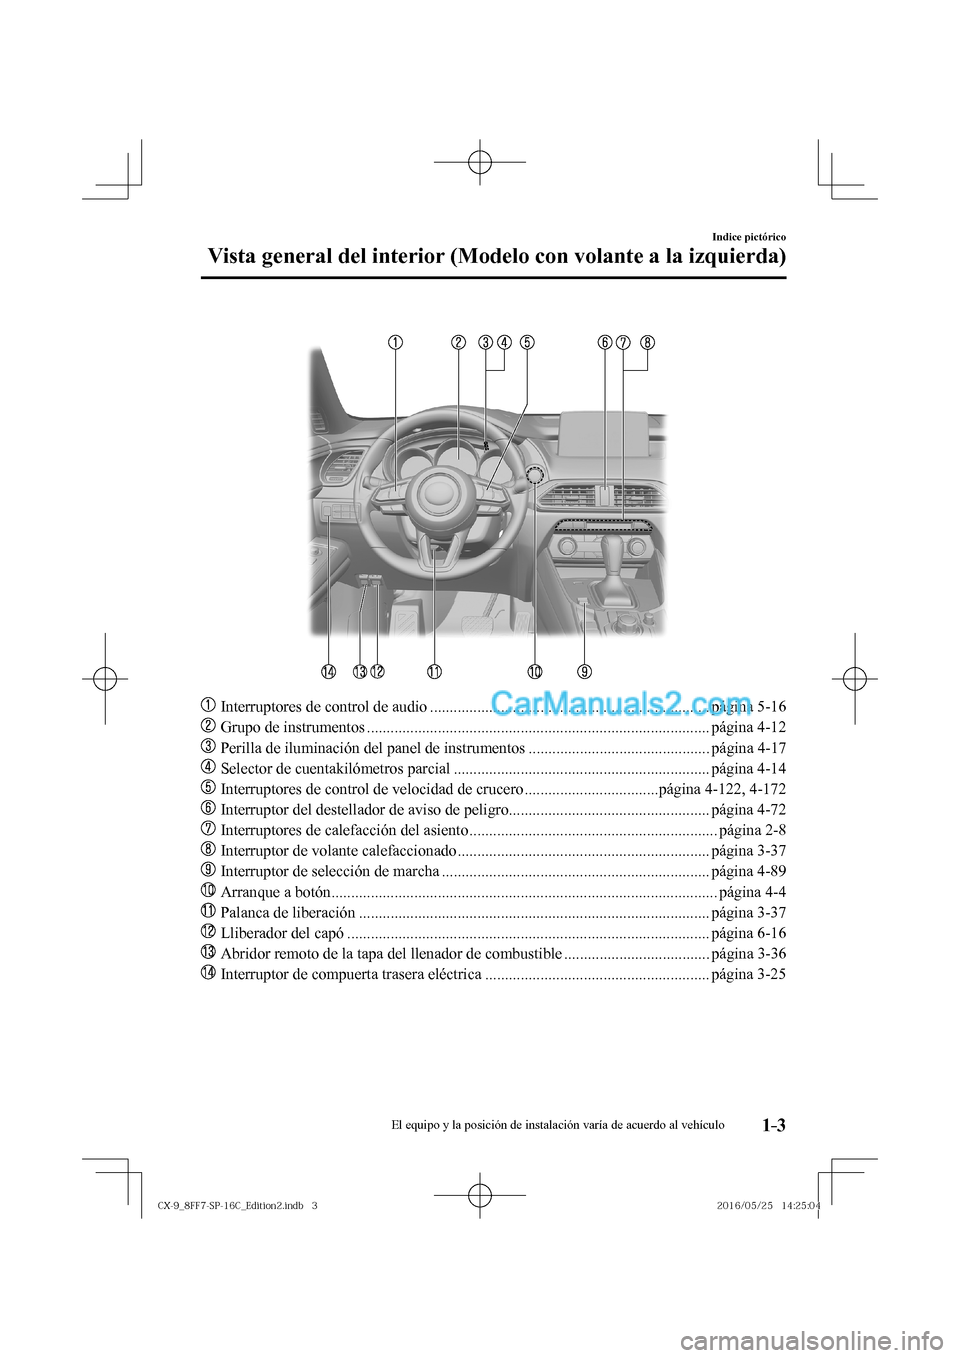 MAZDA MODEL CX-9 2017  Manual del propietario (in Spanish)  1–3
Indice pictórico
Vista general del interior (Modelo con volante a la izquierda)
   
���
  Interruptores de control de audio ..................................................................